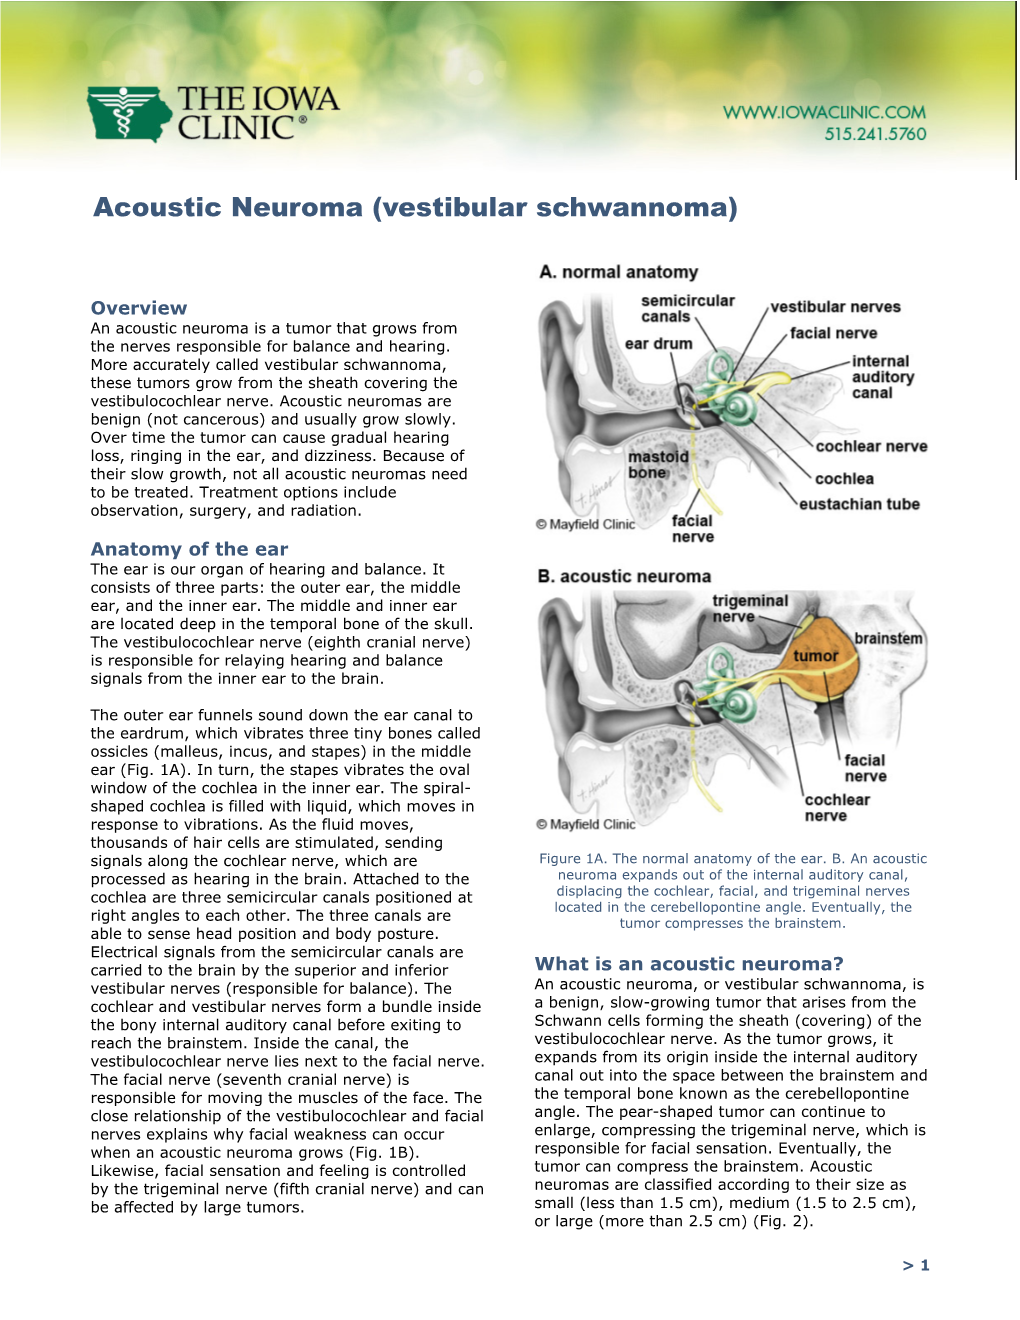 Acoustic Neuroma (Vestibular Schwannoma)